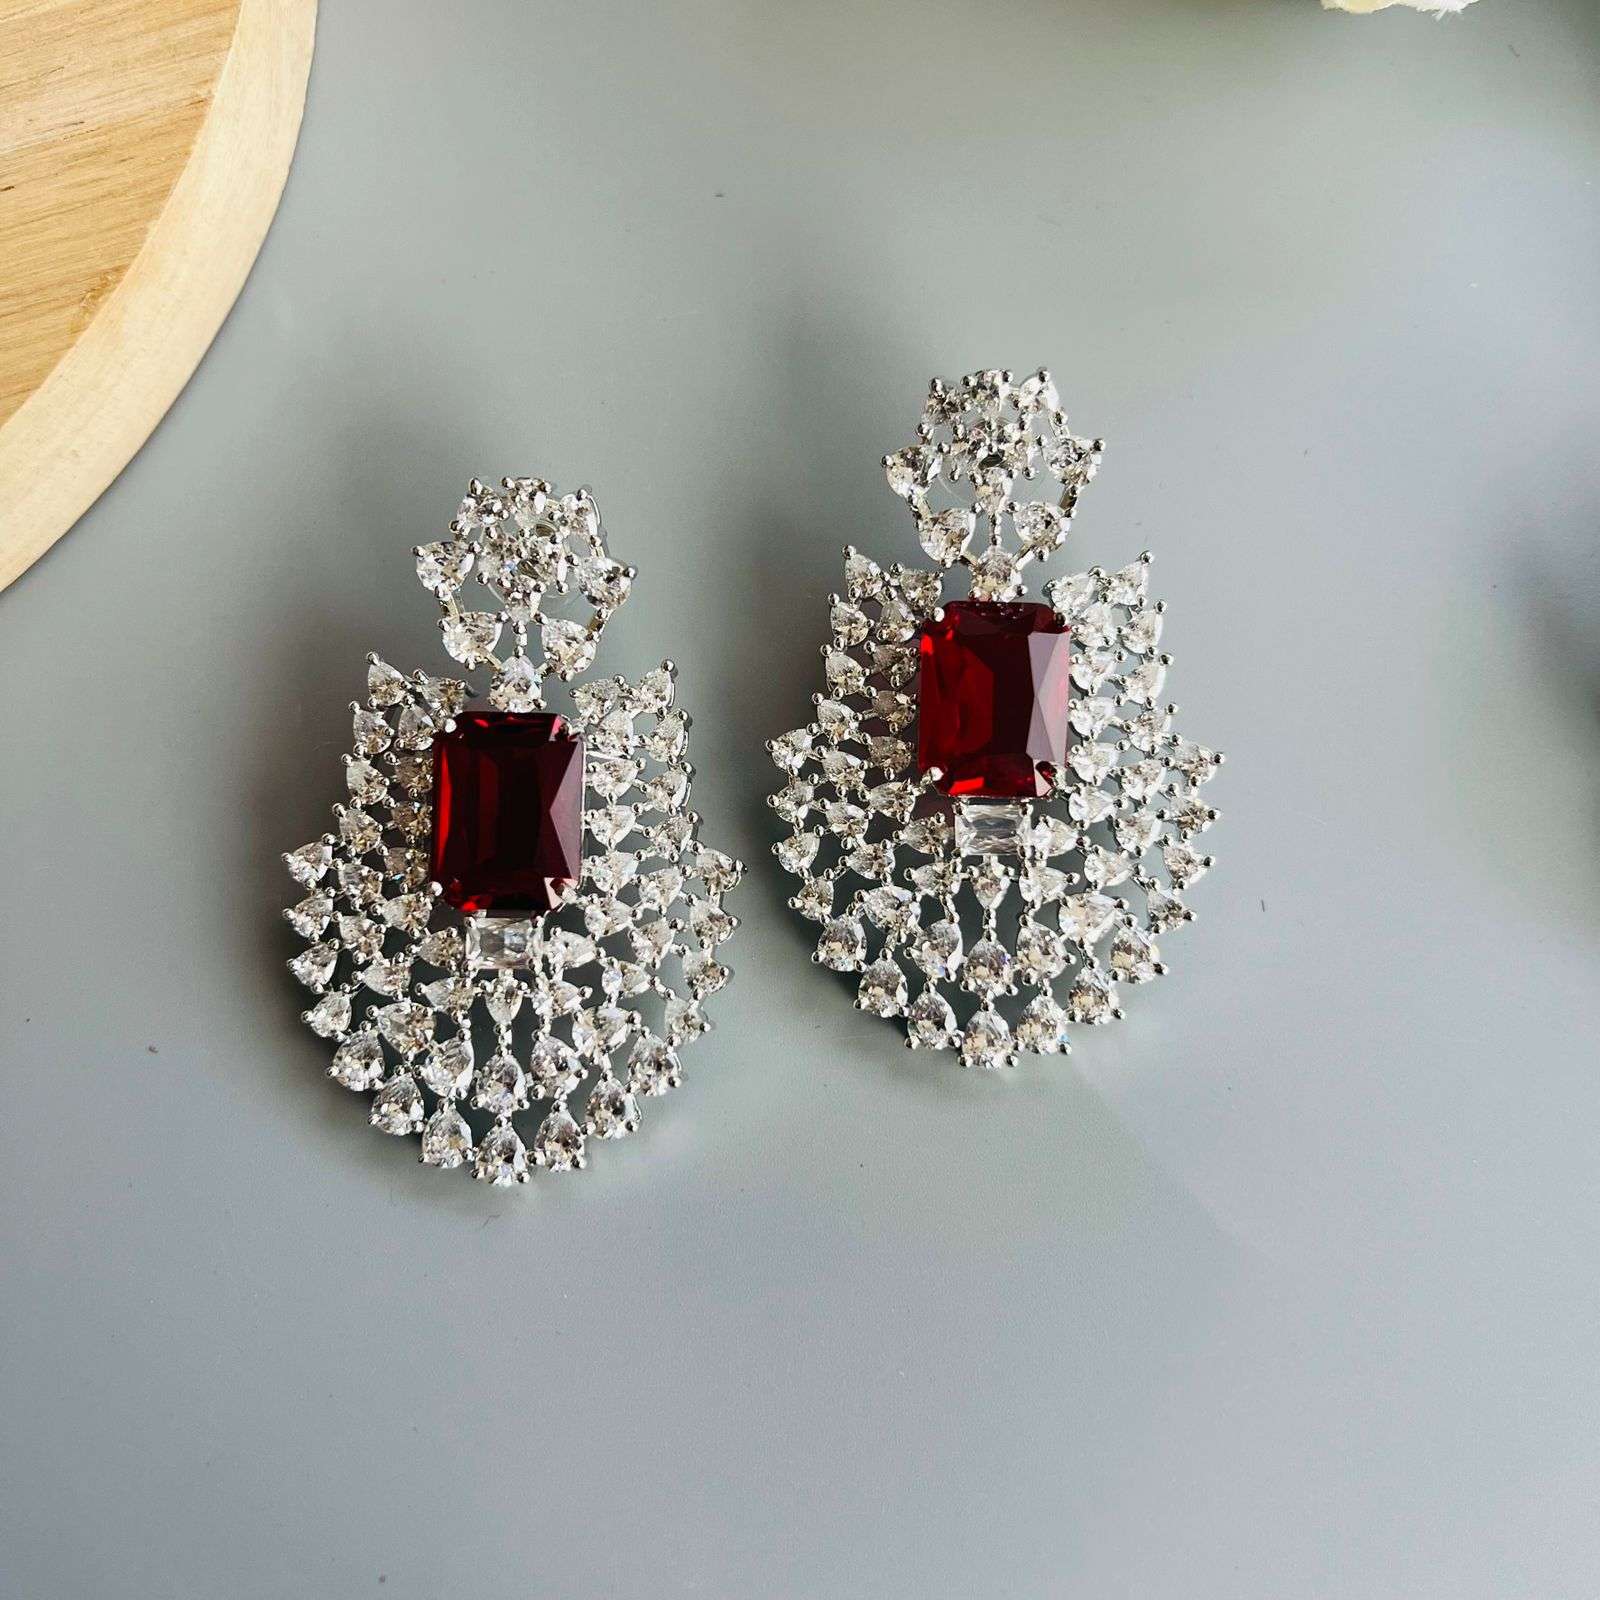 Ad Opal earrings Velvet box by Shweta